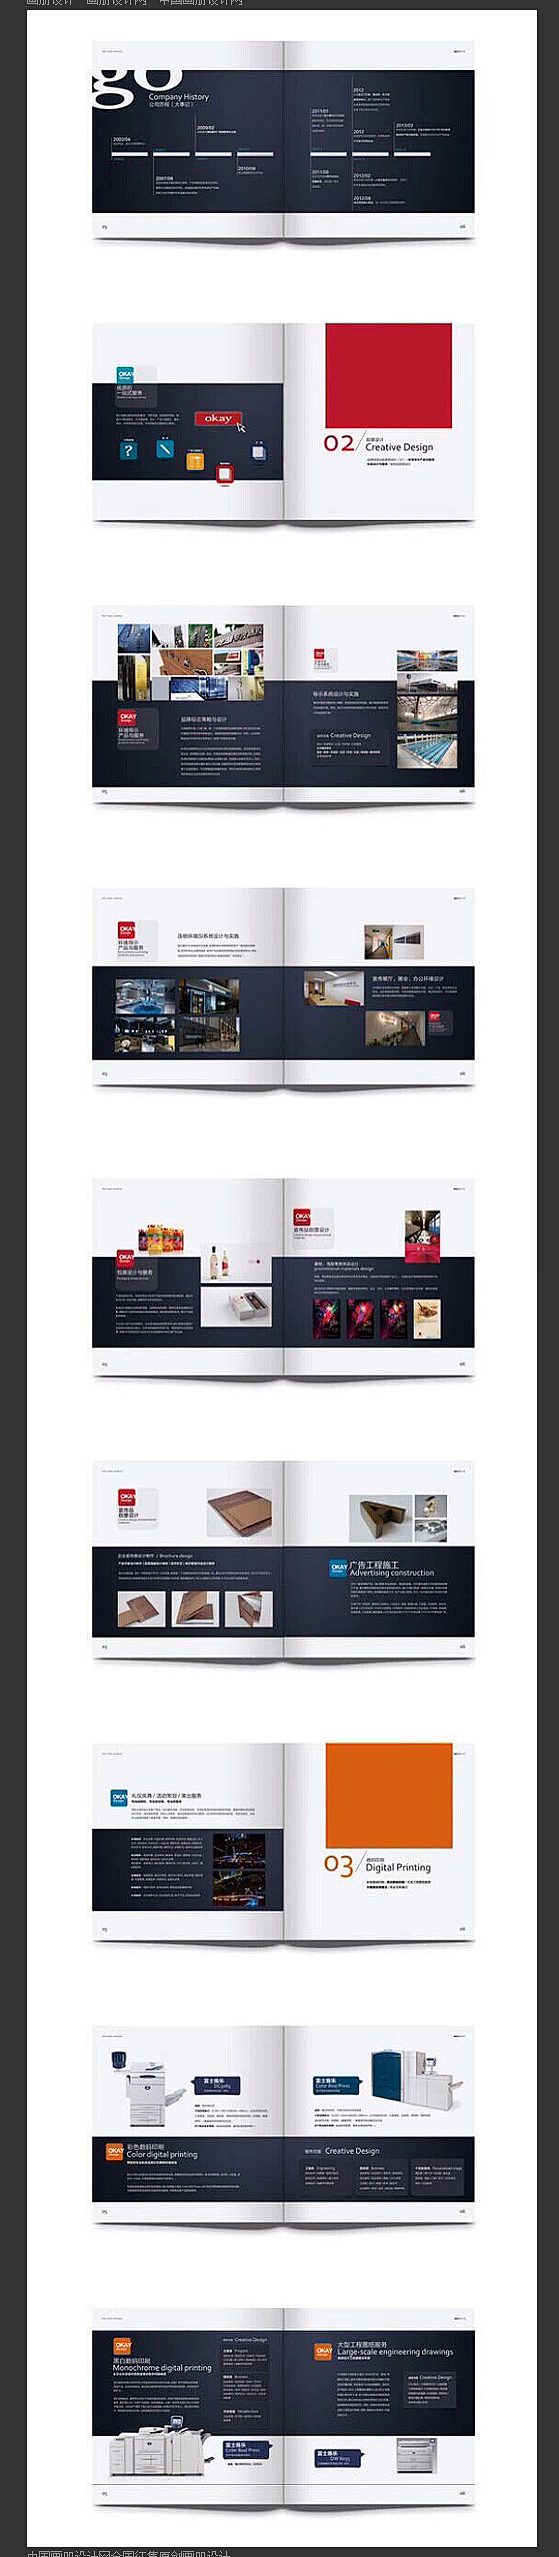 中国画册设计网——经典画册版式设计欣赏 ...